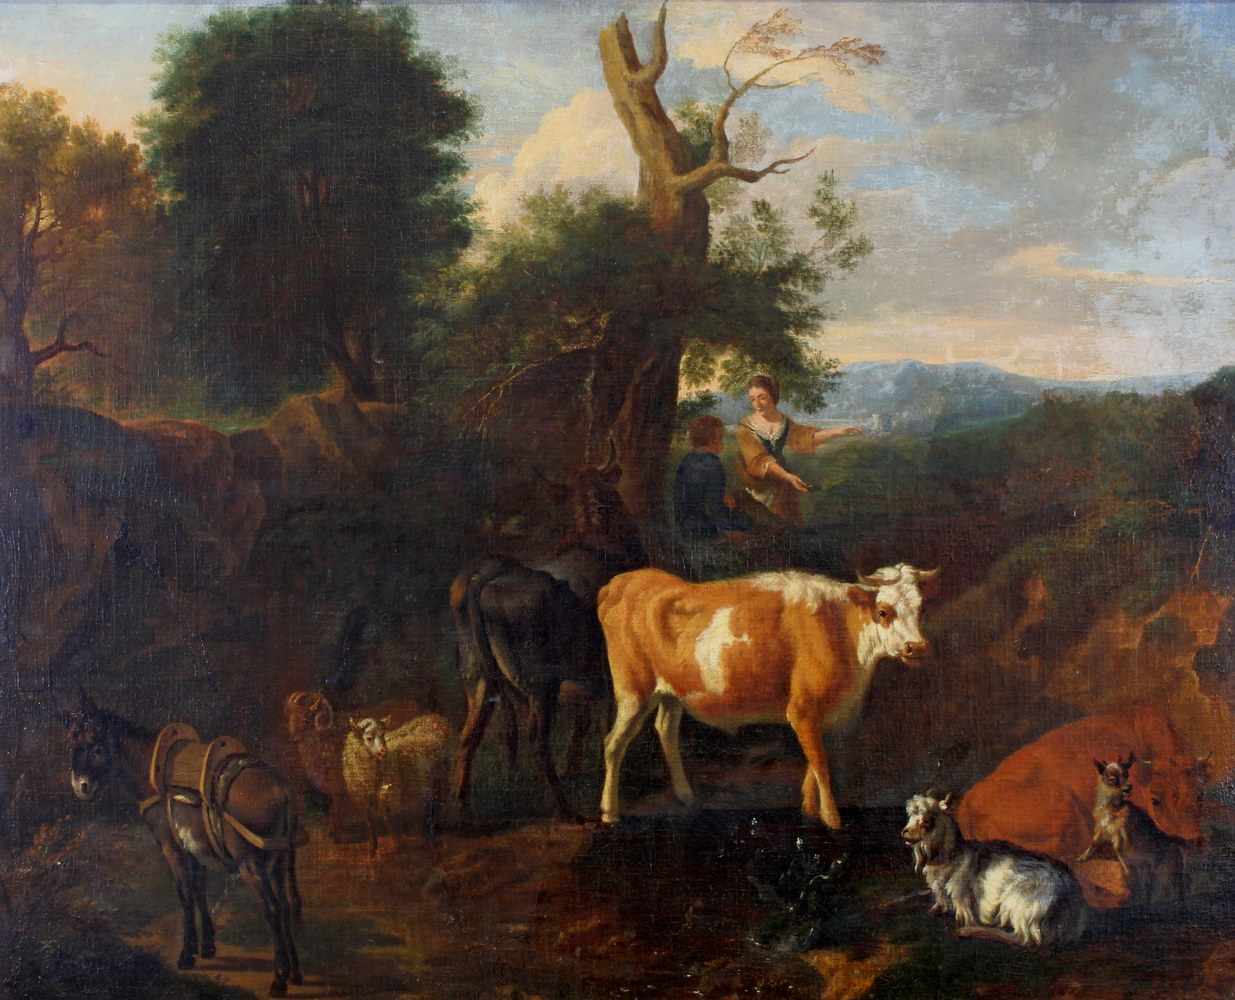 Bergen, Dirck van (Haarlem 1645 - 1690/1710), zugeschrieben, "Landschaft mit Hirten", Öl auf